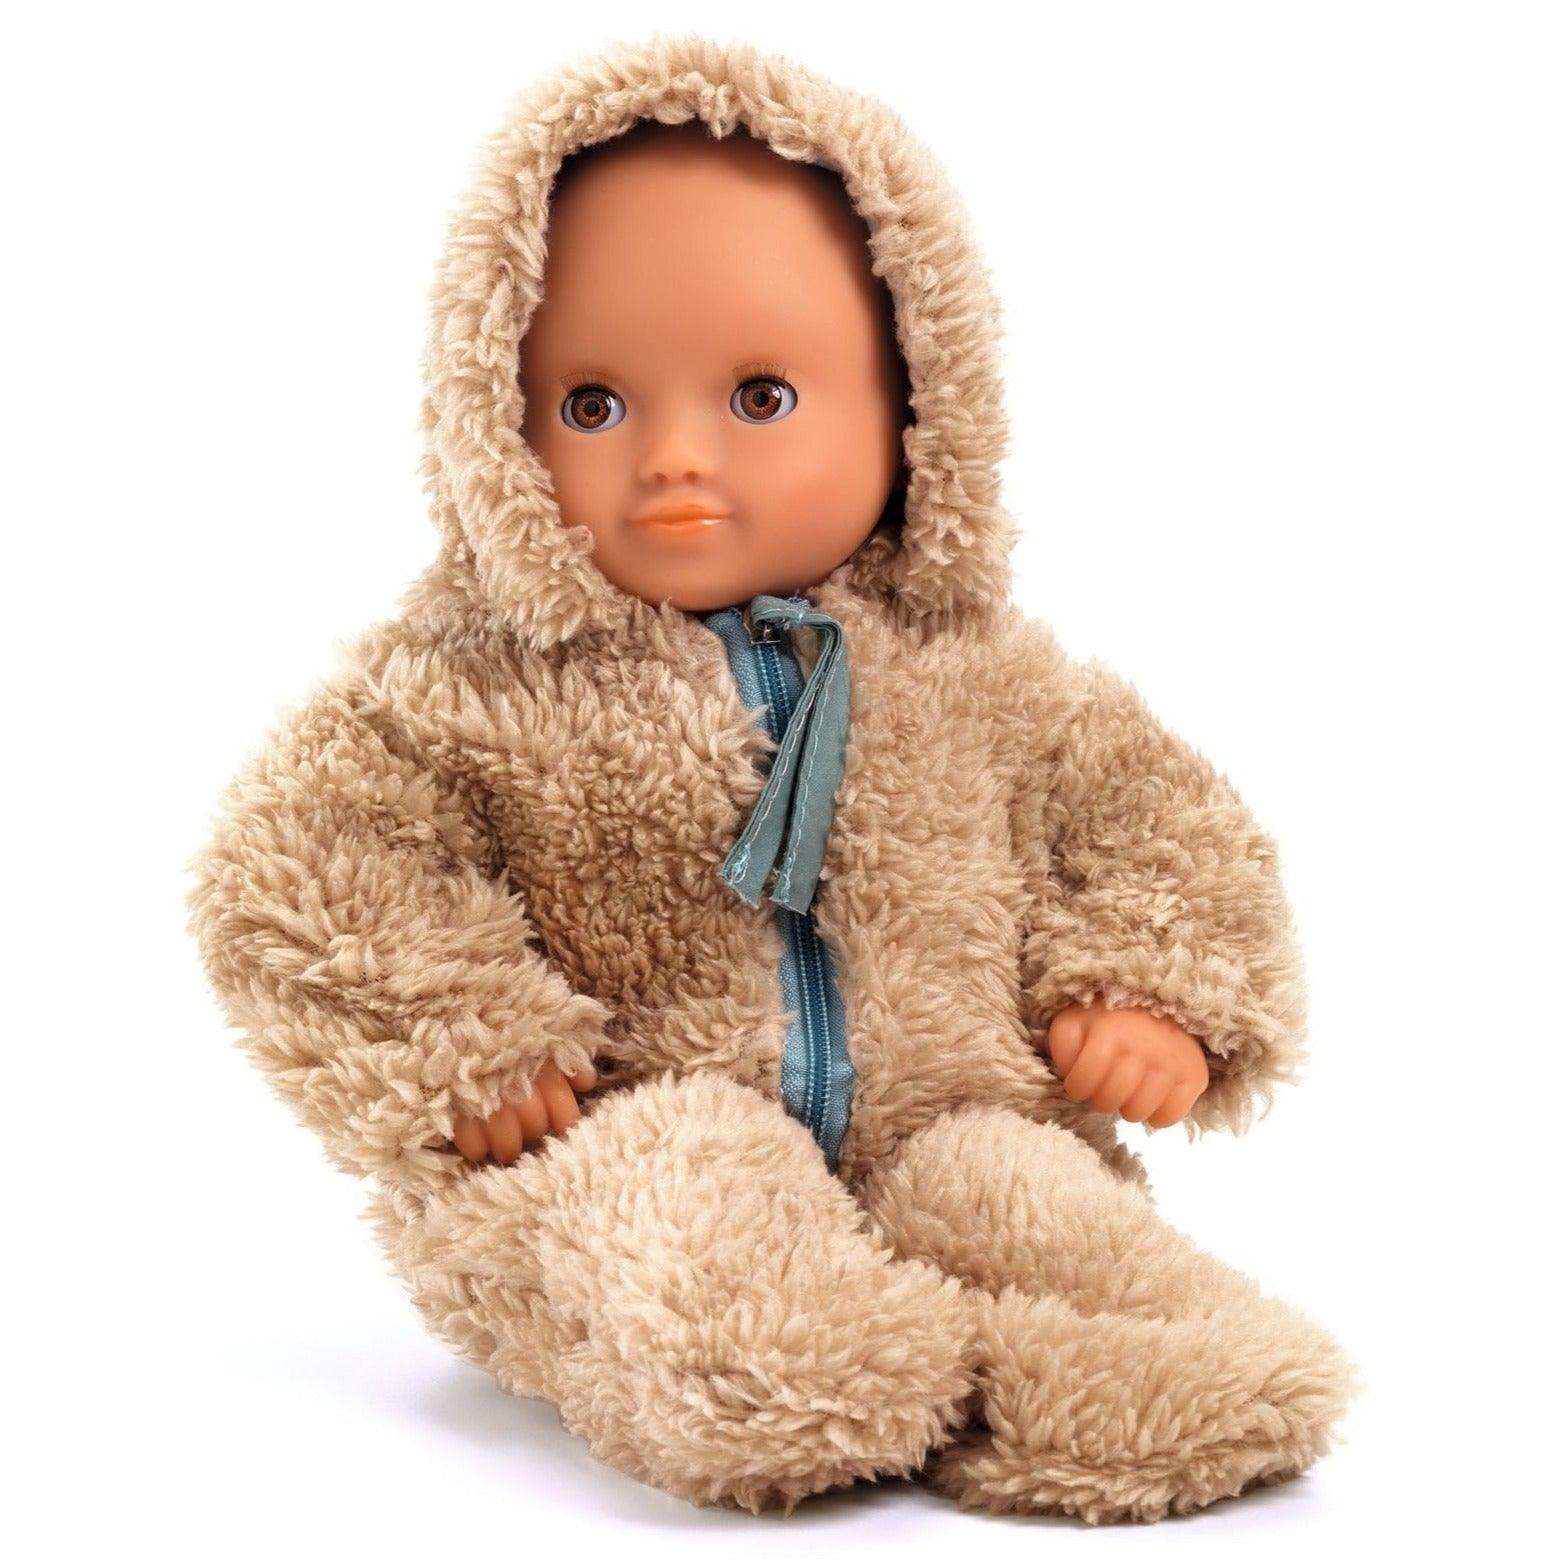 Pomea: Téli öltöny a Teddy Doll számára